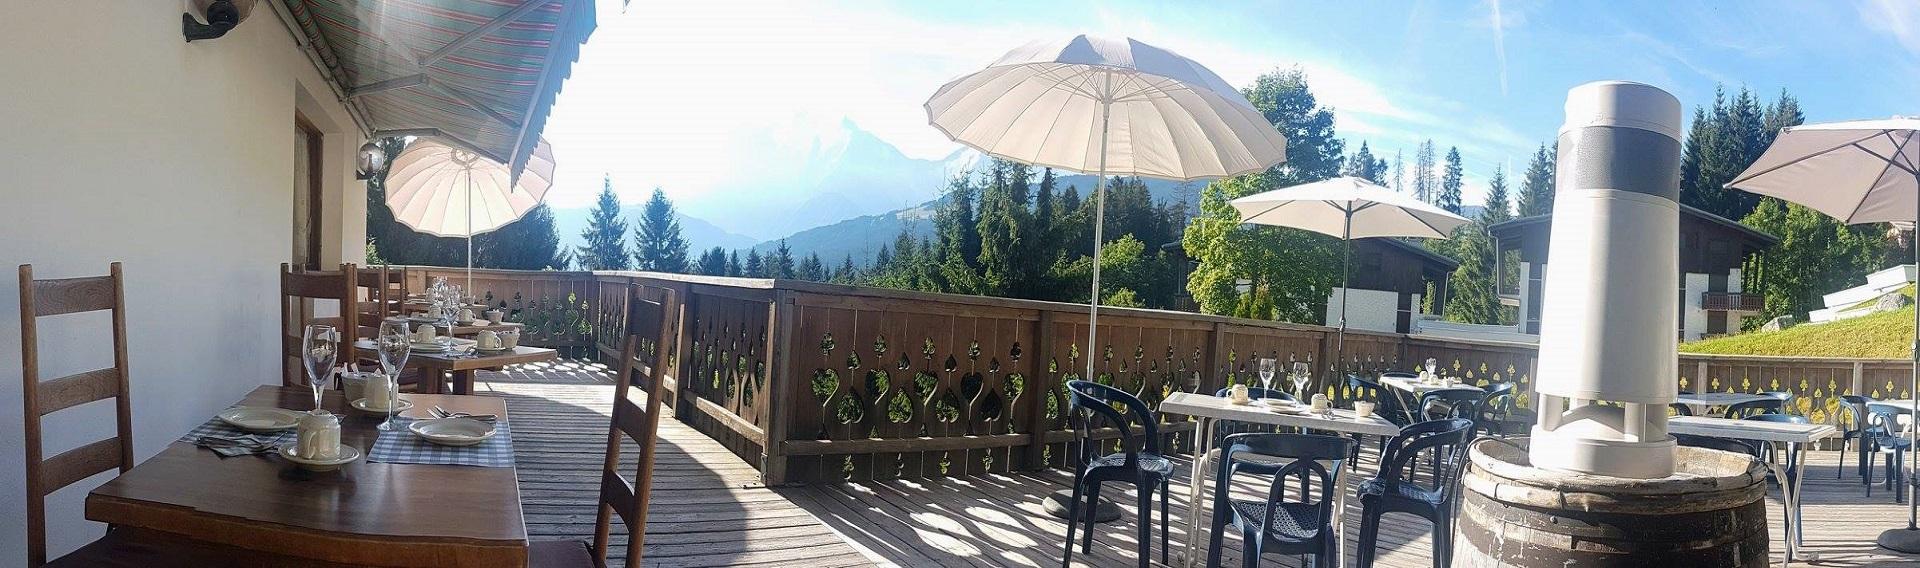 chalet-alpen-valley-megeve-incentive-ski-montagne-terrasse-101 seminaires-de-caractere